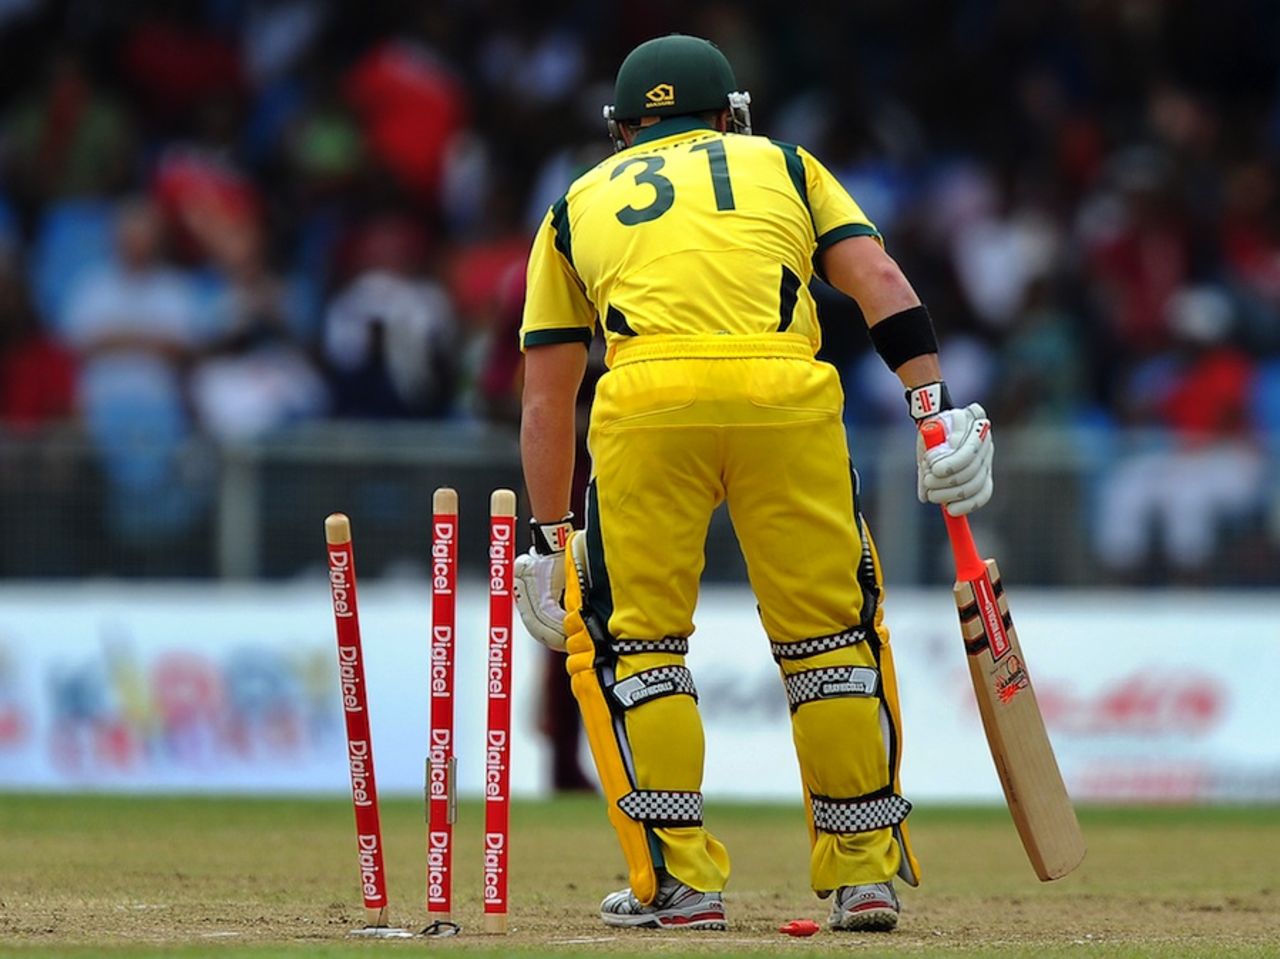 David Warner is bowled for 13, West Indies v Australia, 2nd ODI, St Vincent, March 18, 2012